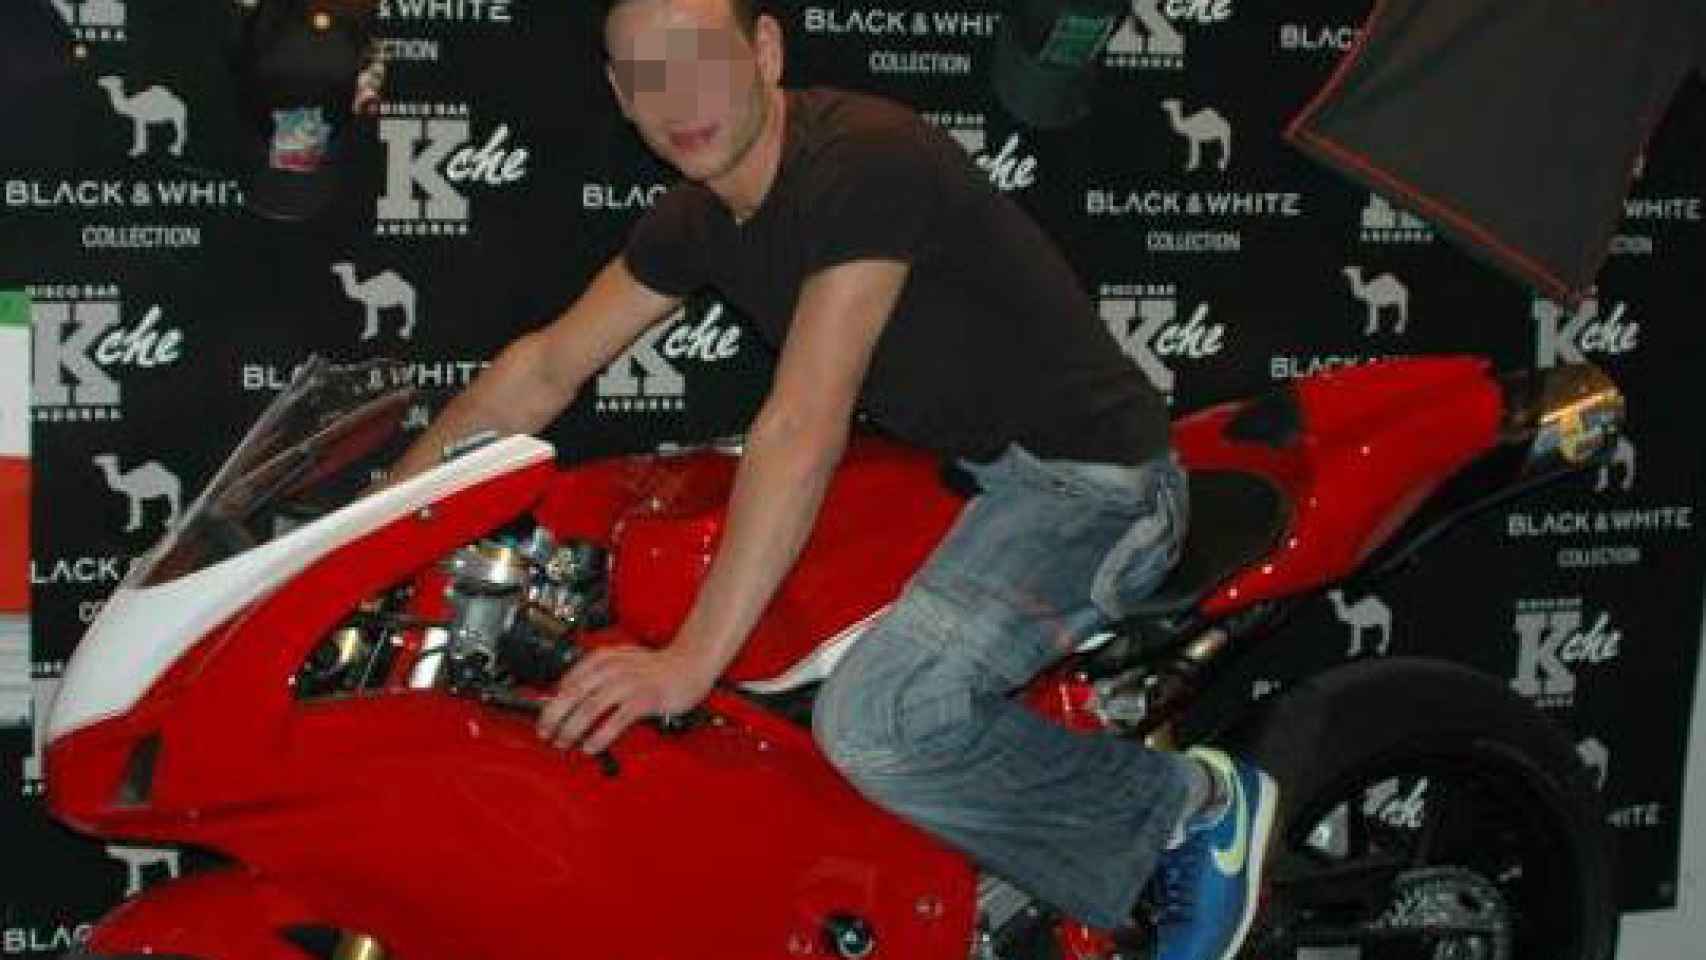 Jorge subido en motos de gran cilindrada, en imágenes que él mismo compartió en su perfil personal de Facebook.